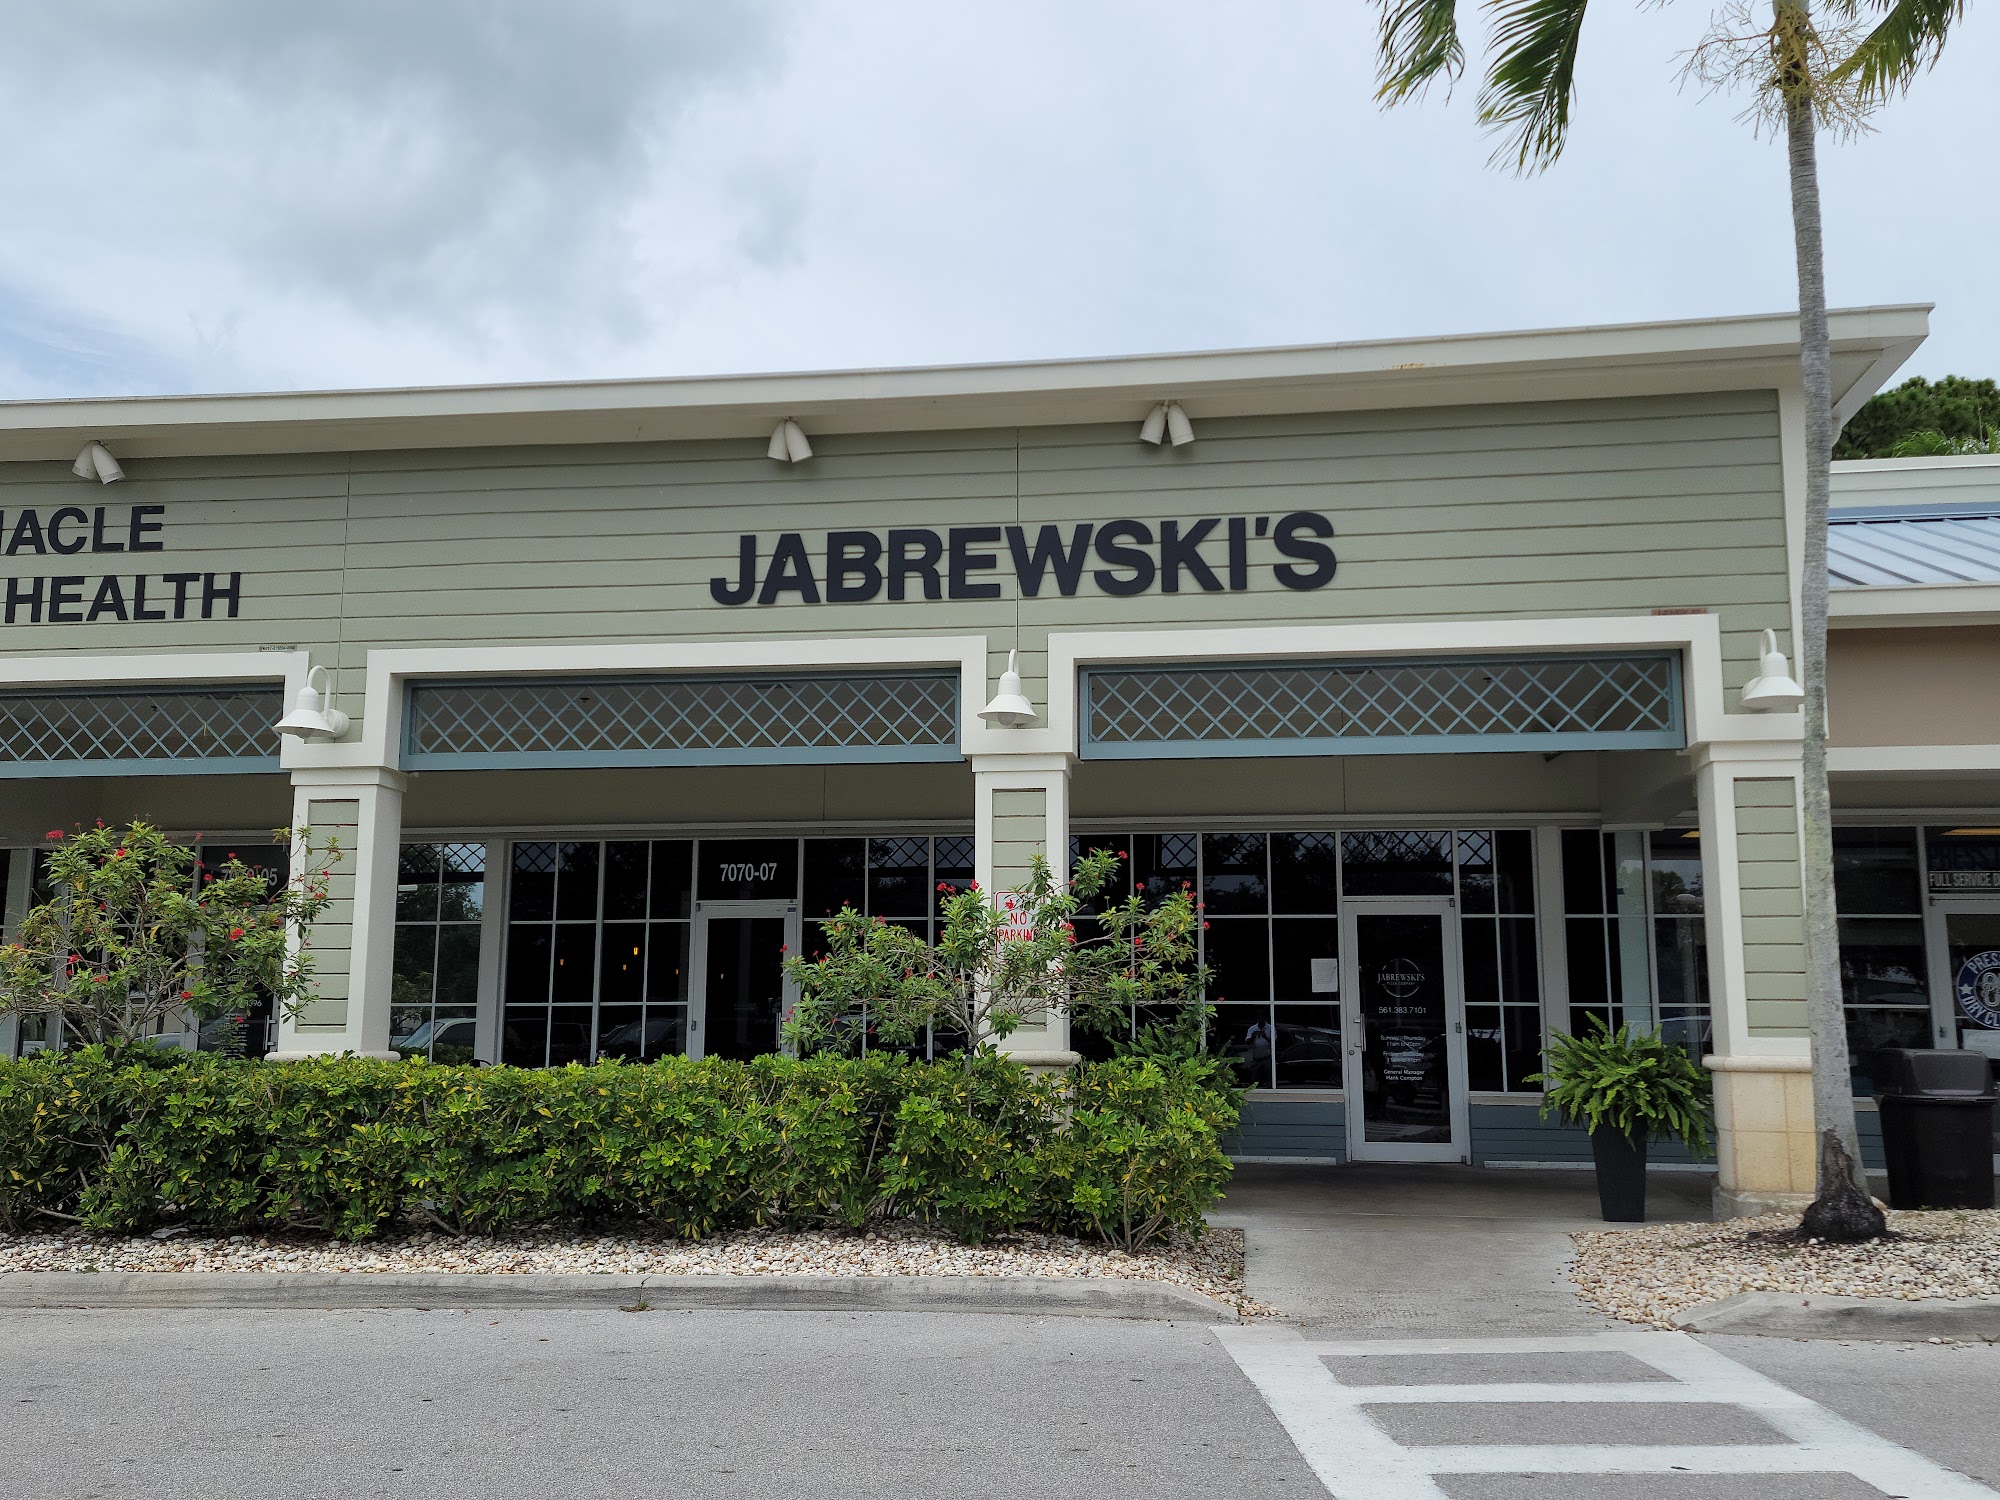 Jabrewski's Pizza Company